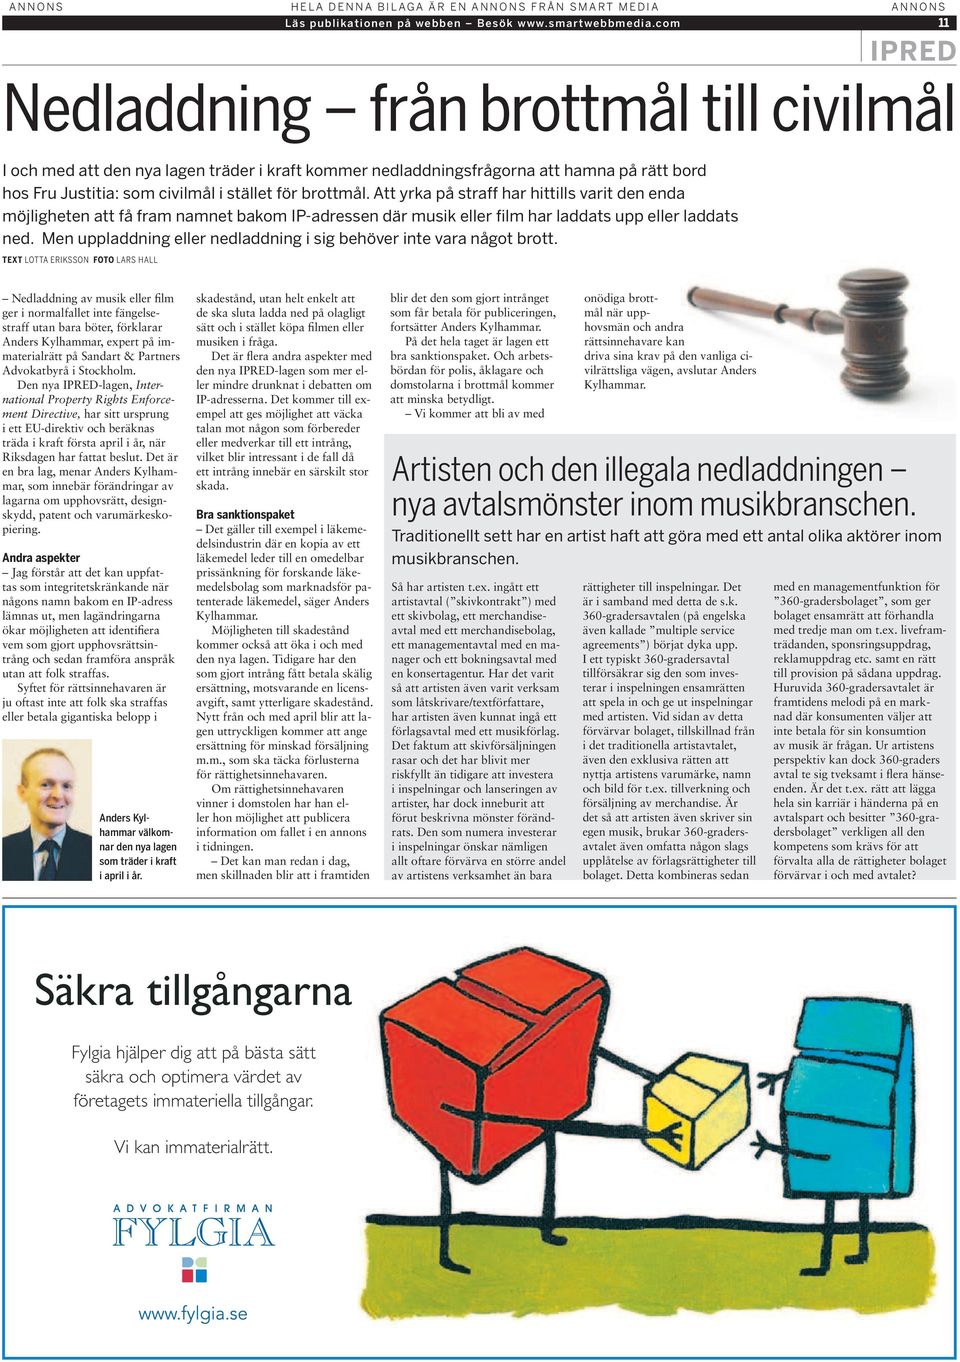 Det är en bra lag, menar Anders Kylhammar, som innebär förändringar av lagarna om upphovsrätt, designskydd, patent och varumärkeskopiering.